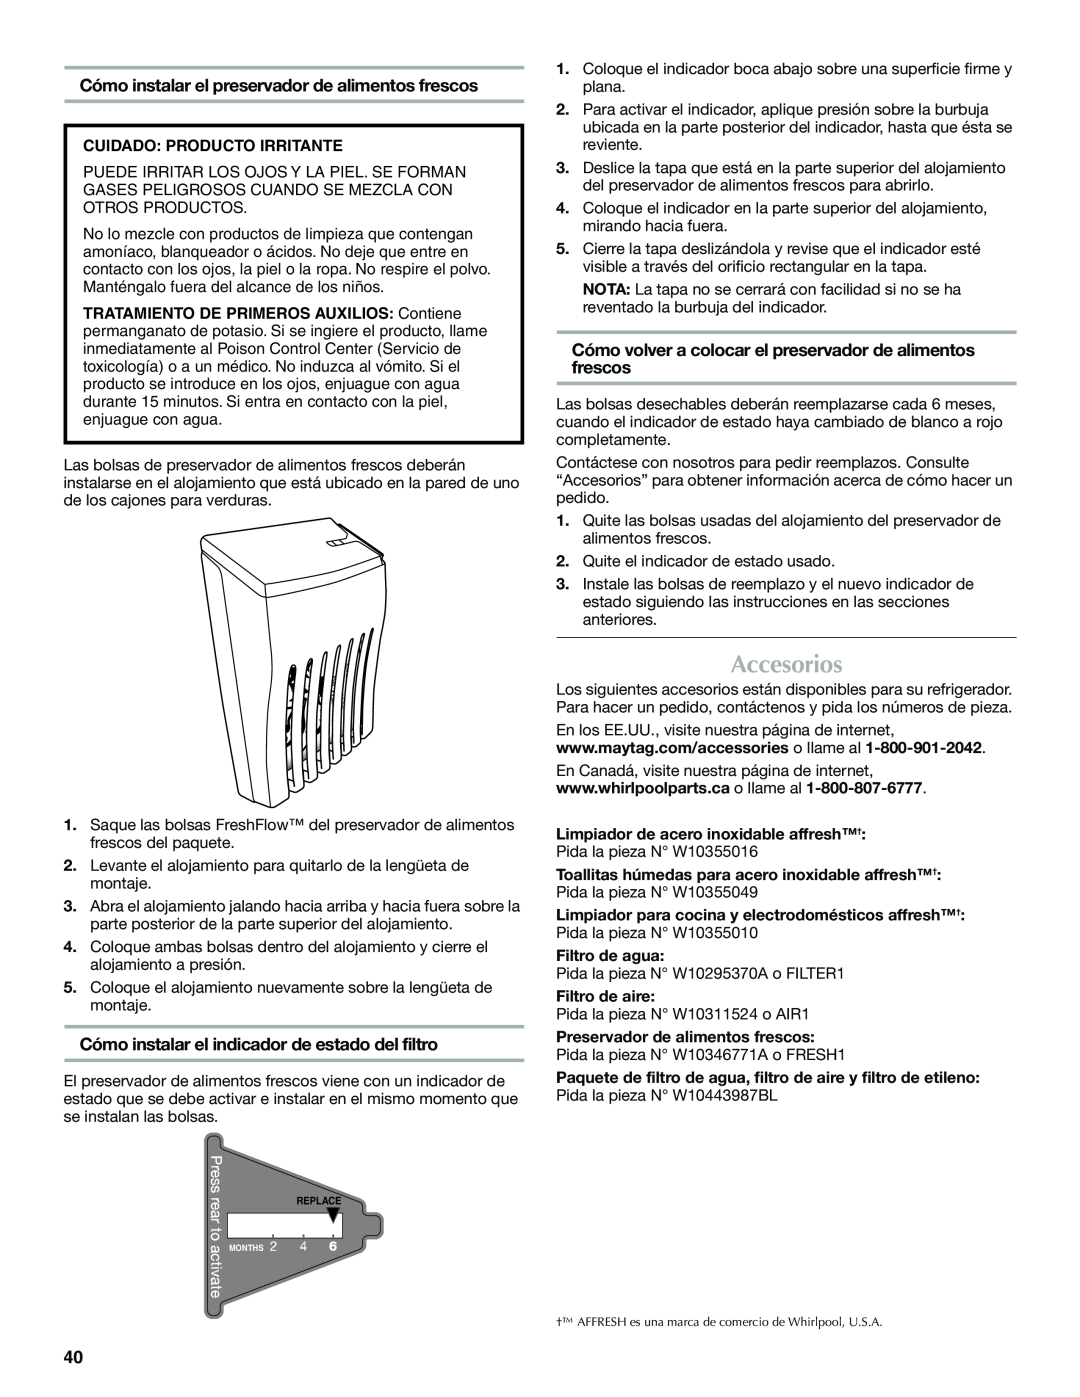 Maytag W10400978A Accesorios, Cómo instalar el preservador de alimentos frescos, Cuidado Producto Irritante 